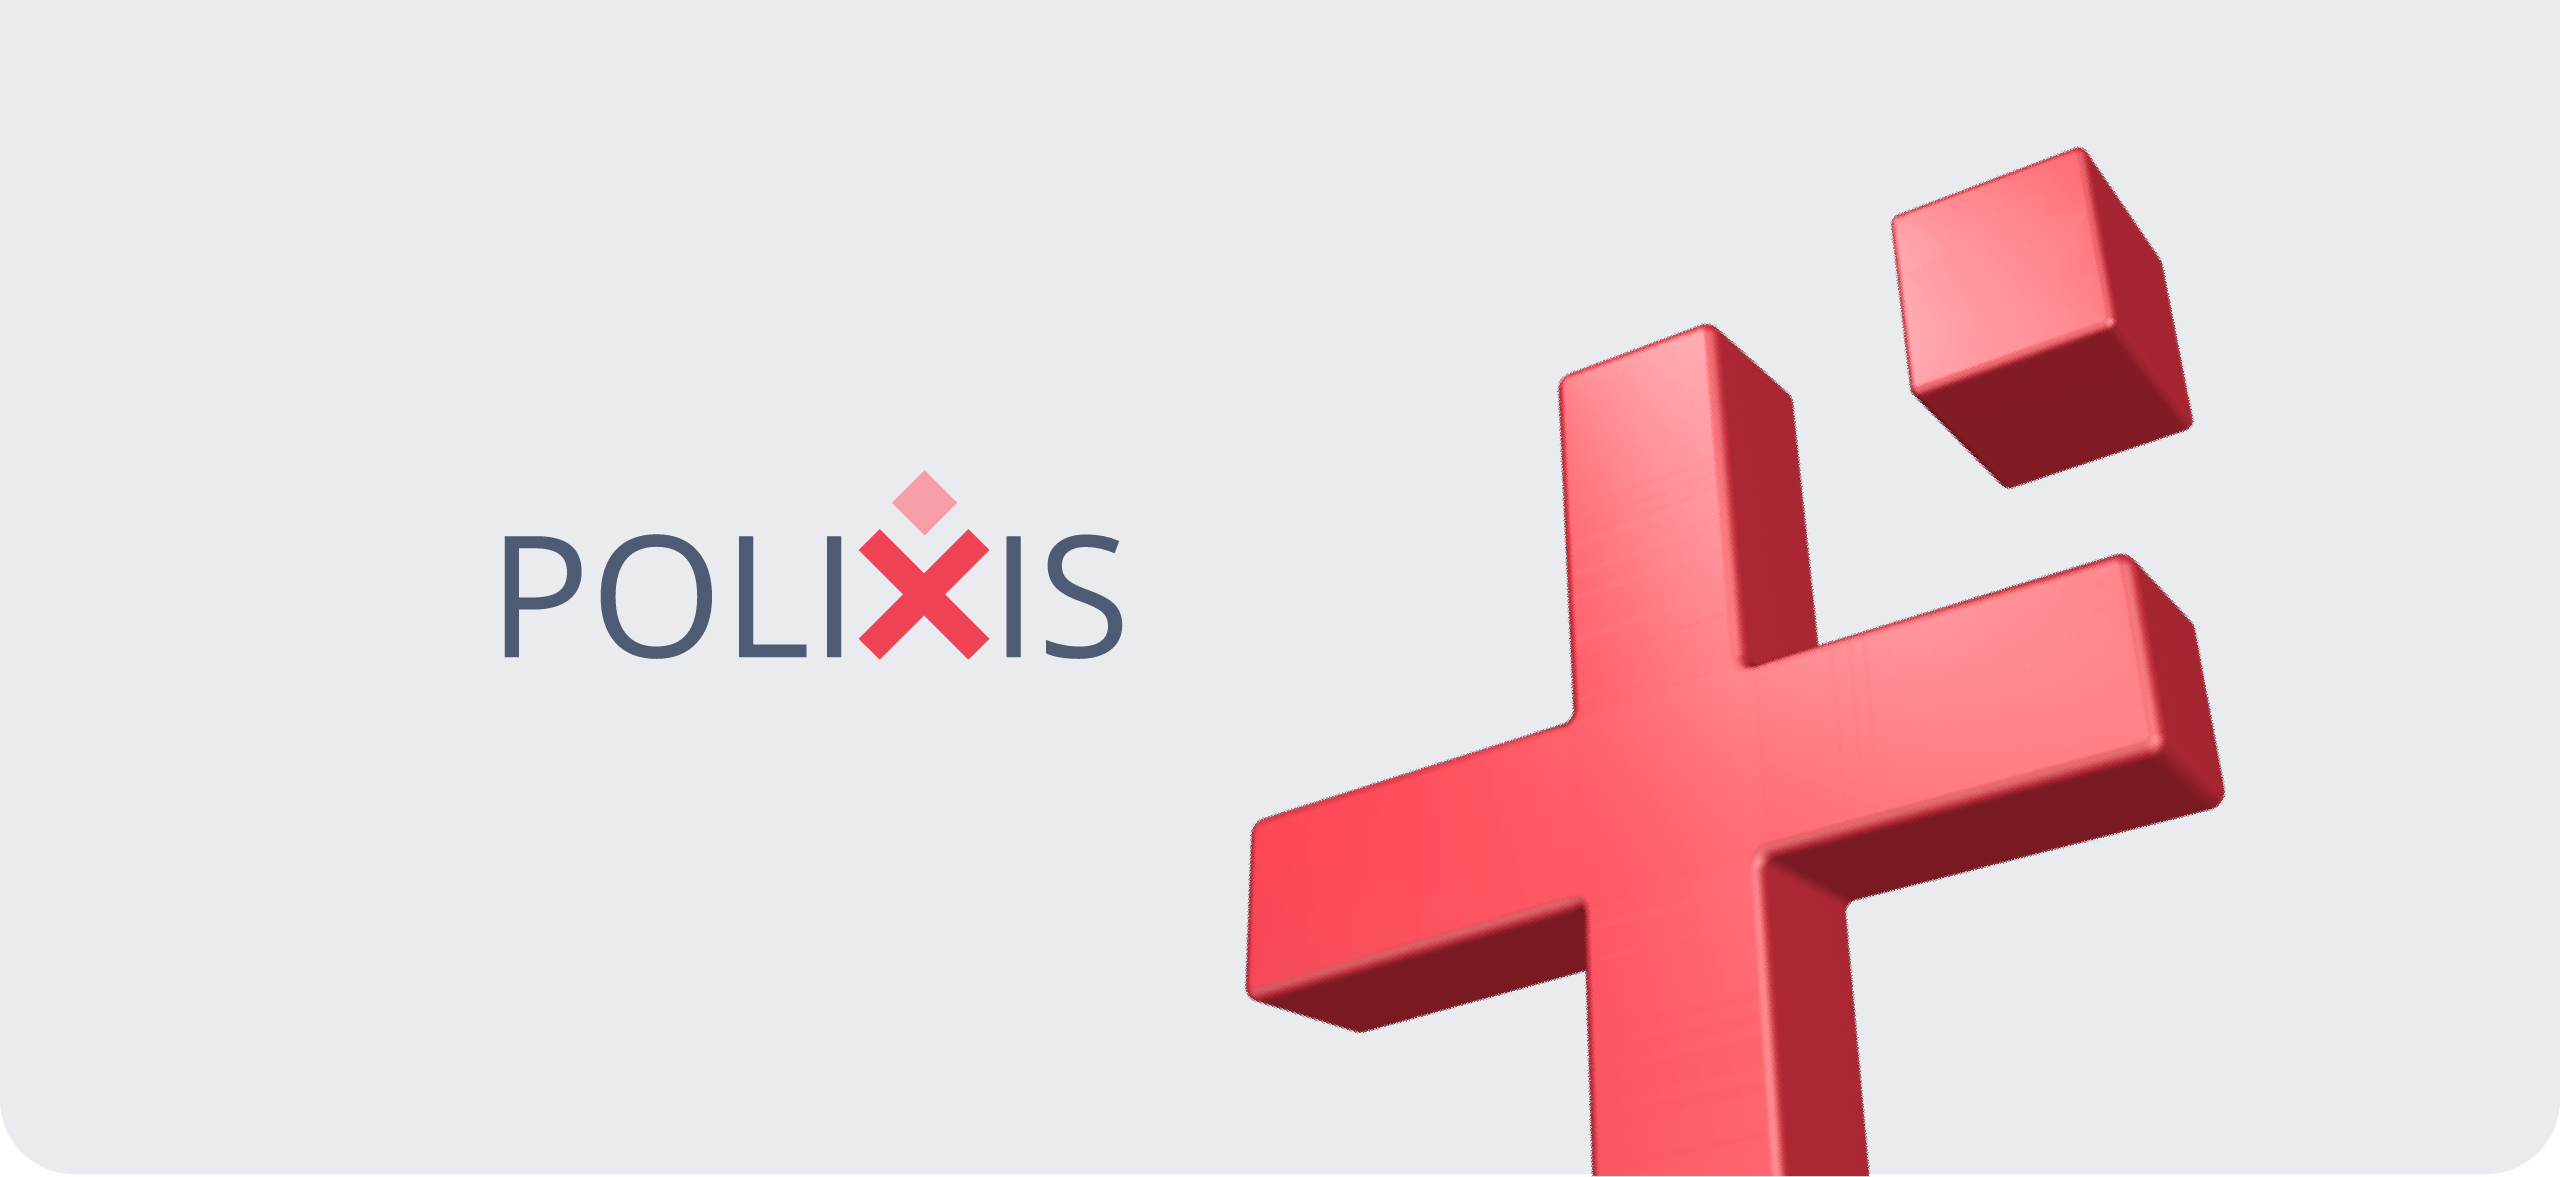 Polixis portfolio website cover